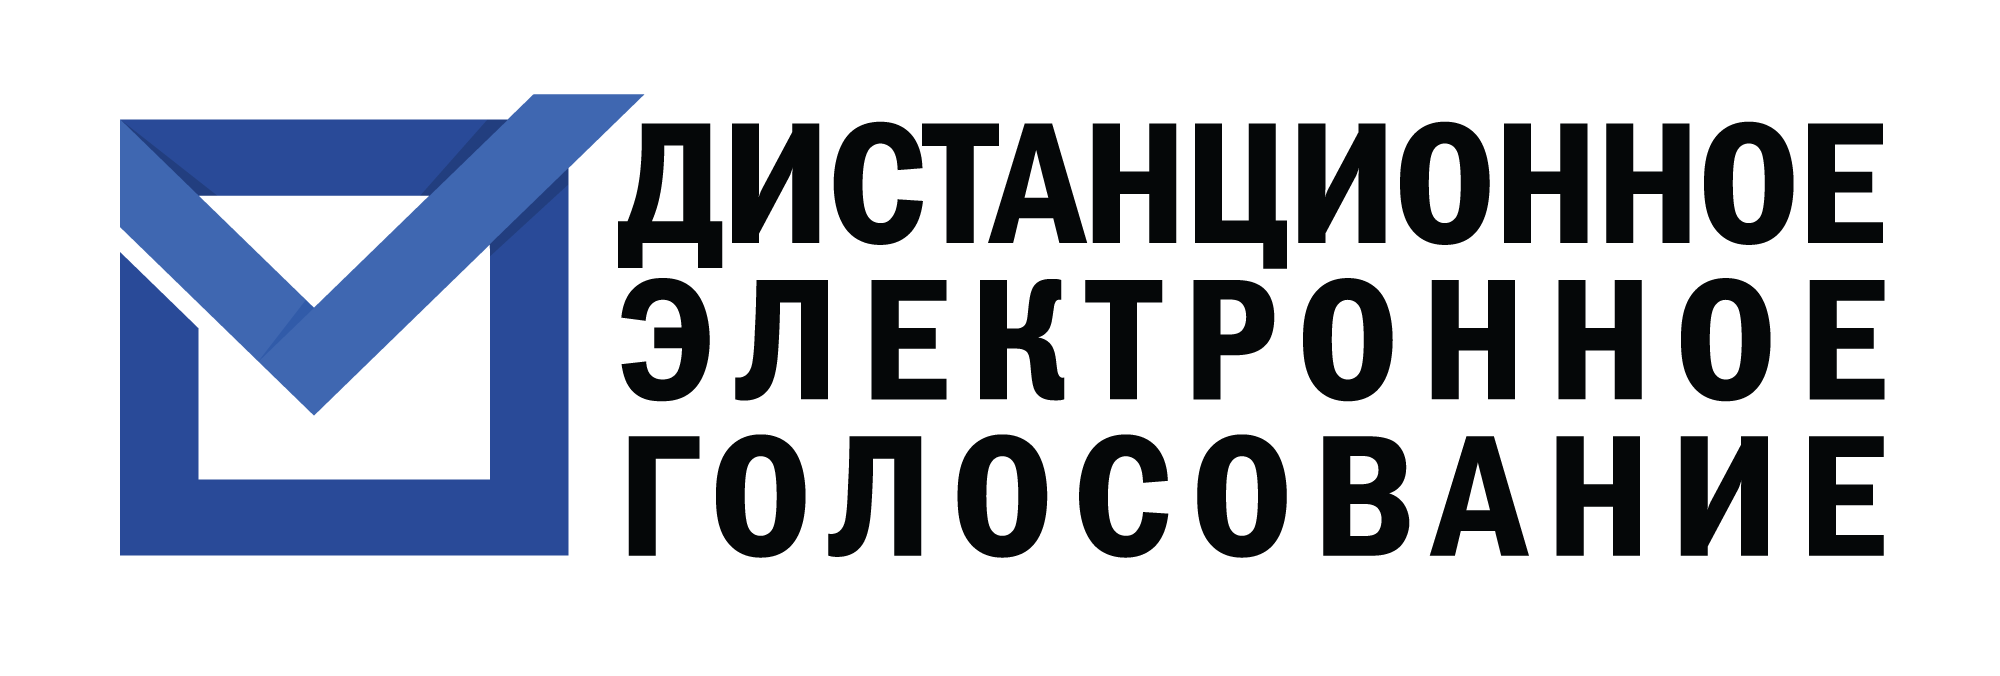 ЦИК России определила 29 субъектов РФ, в которых будет применяться дистанционное электронное голосование (ДЭГ) на выборах Президента Российской Федерации, назначенных на 17 марта 2024 года